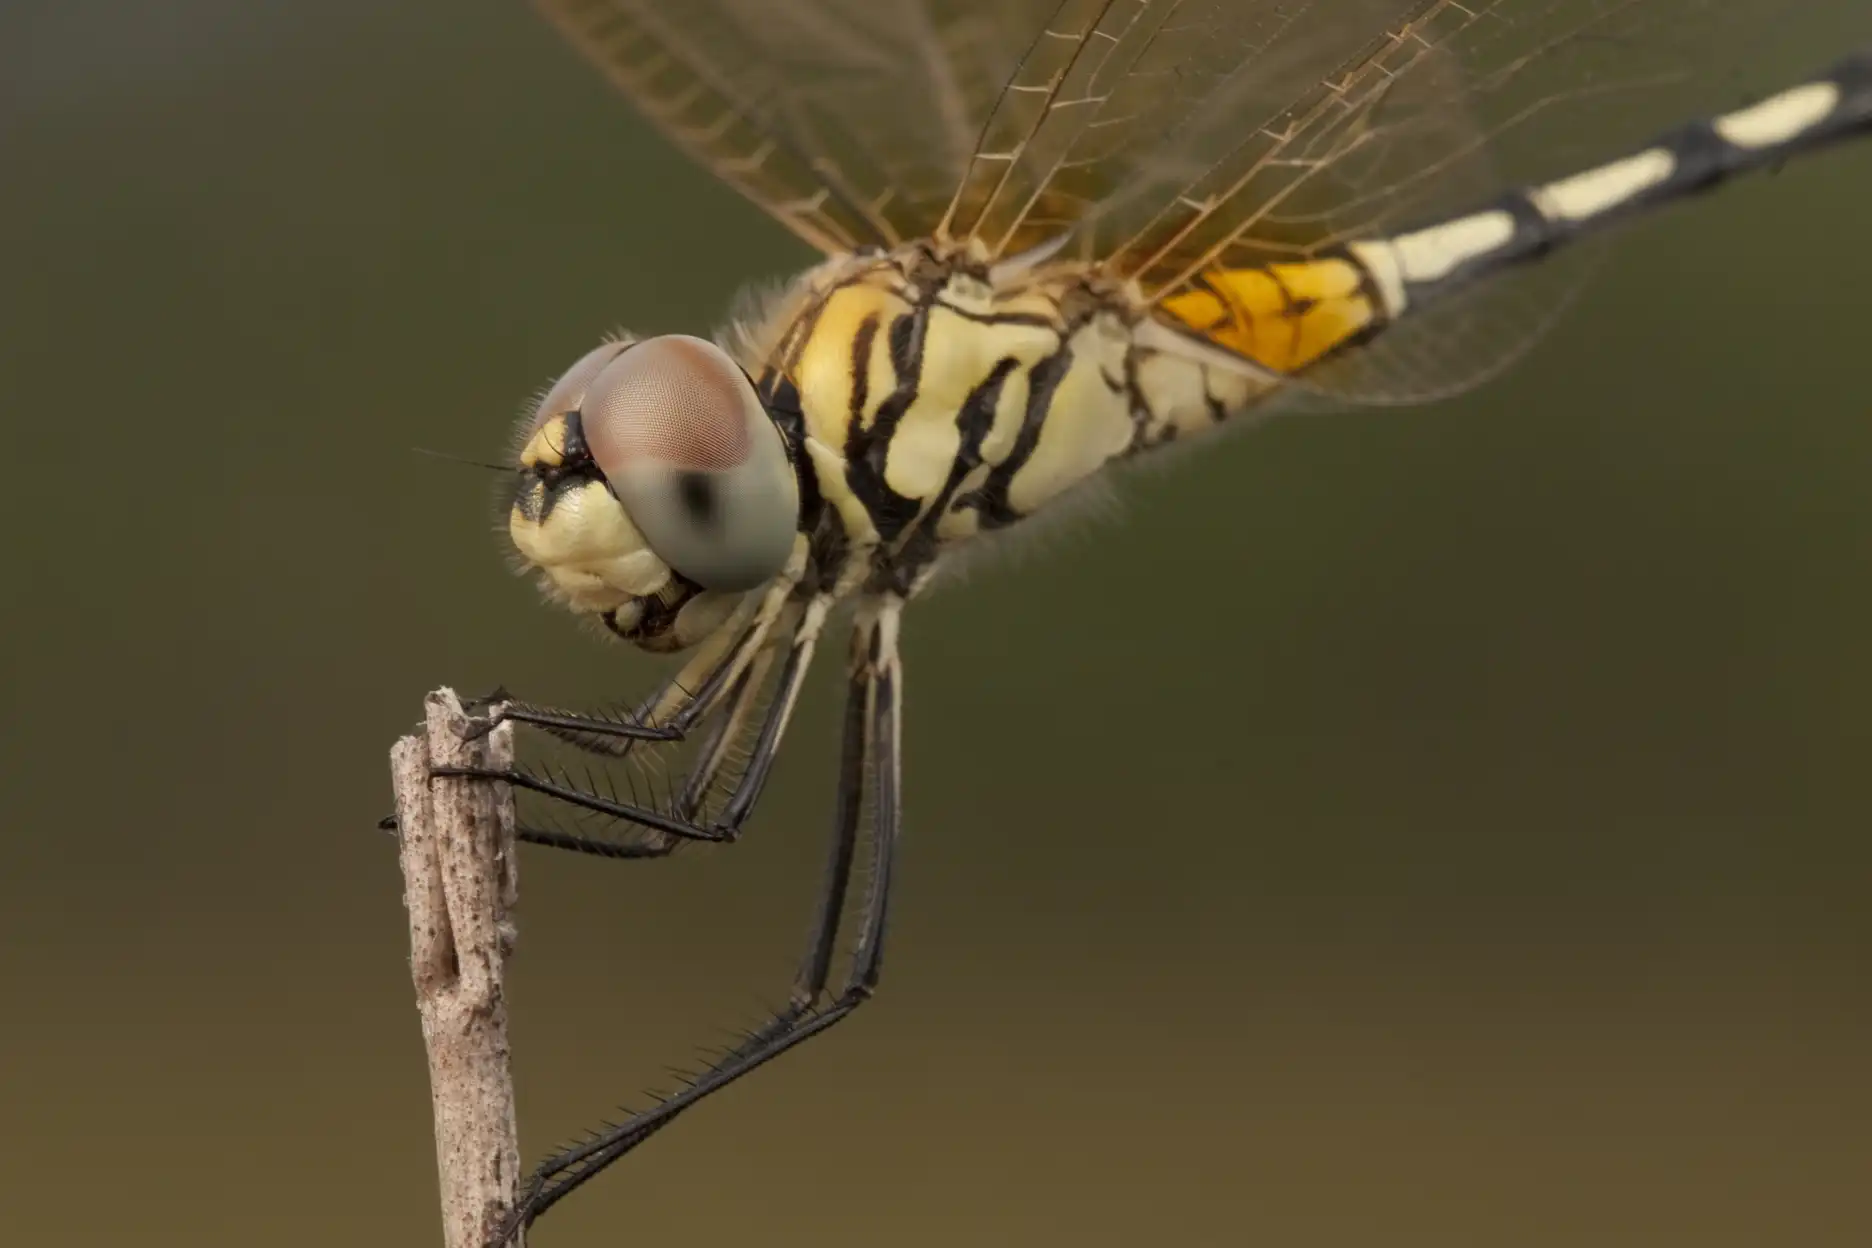 Dragonfly at Phu Phan National Park, Thailand